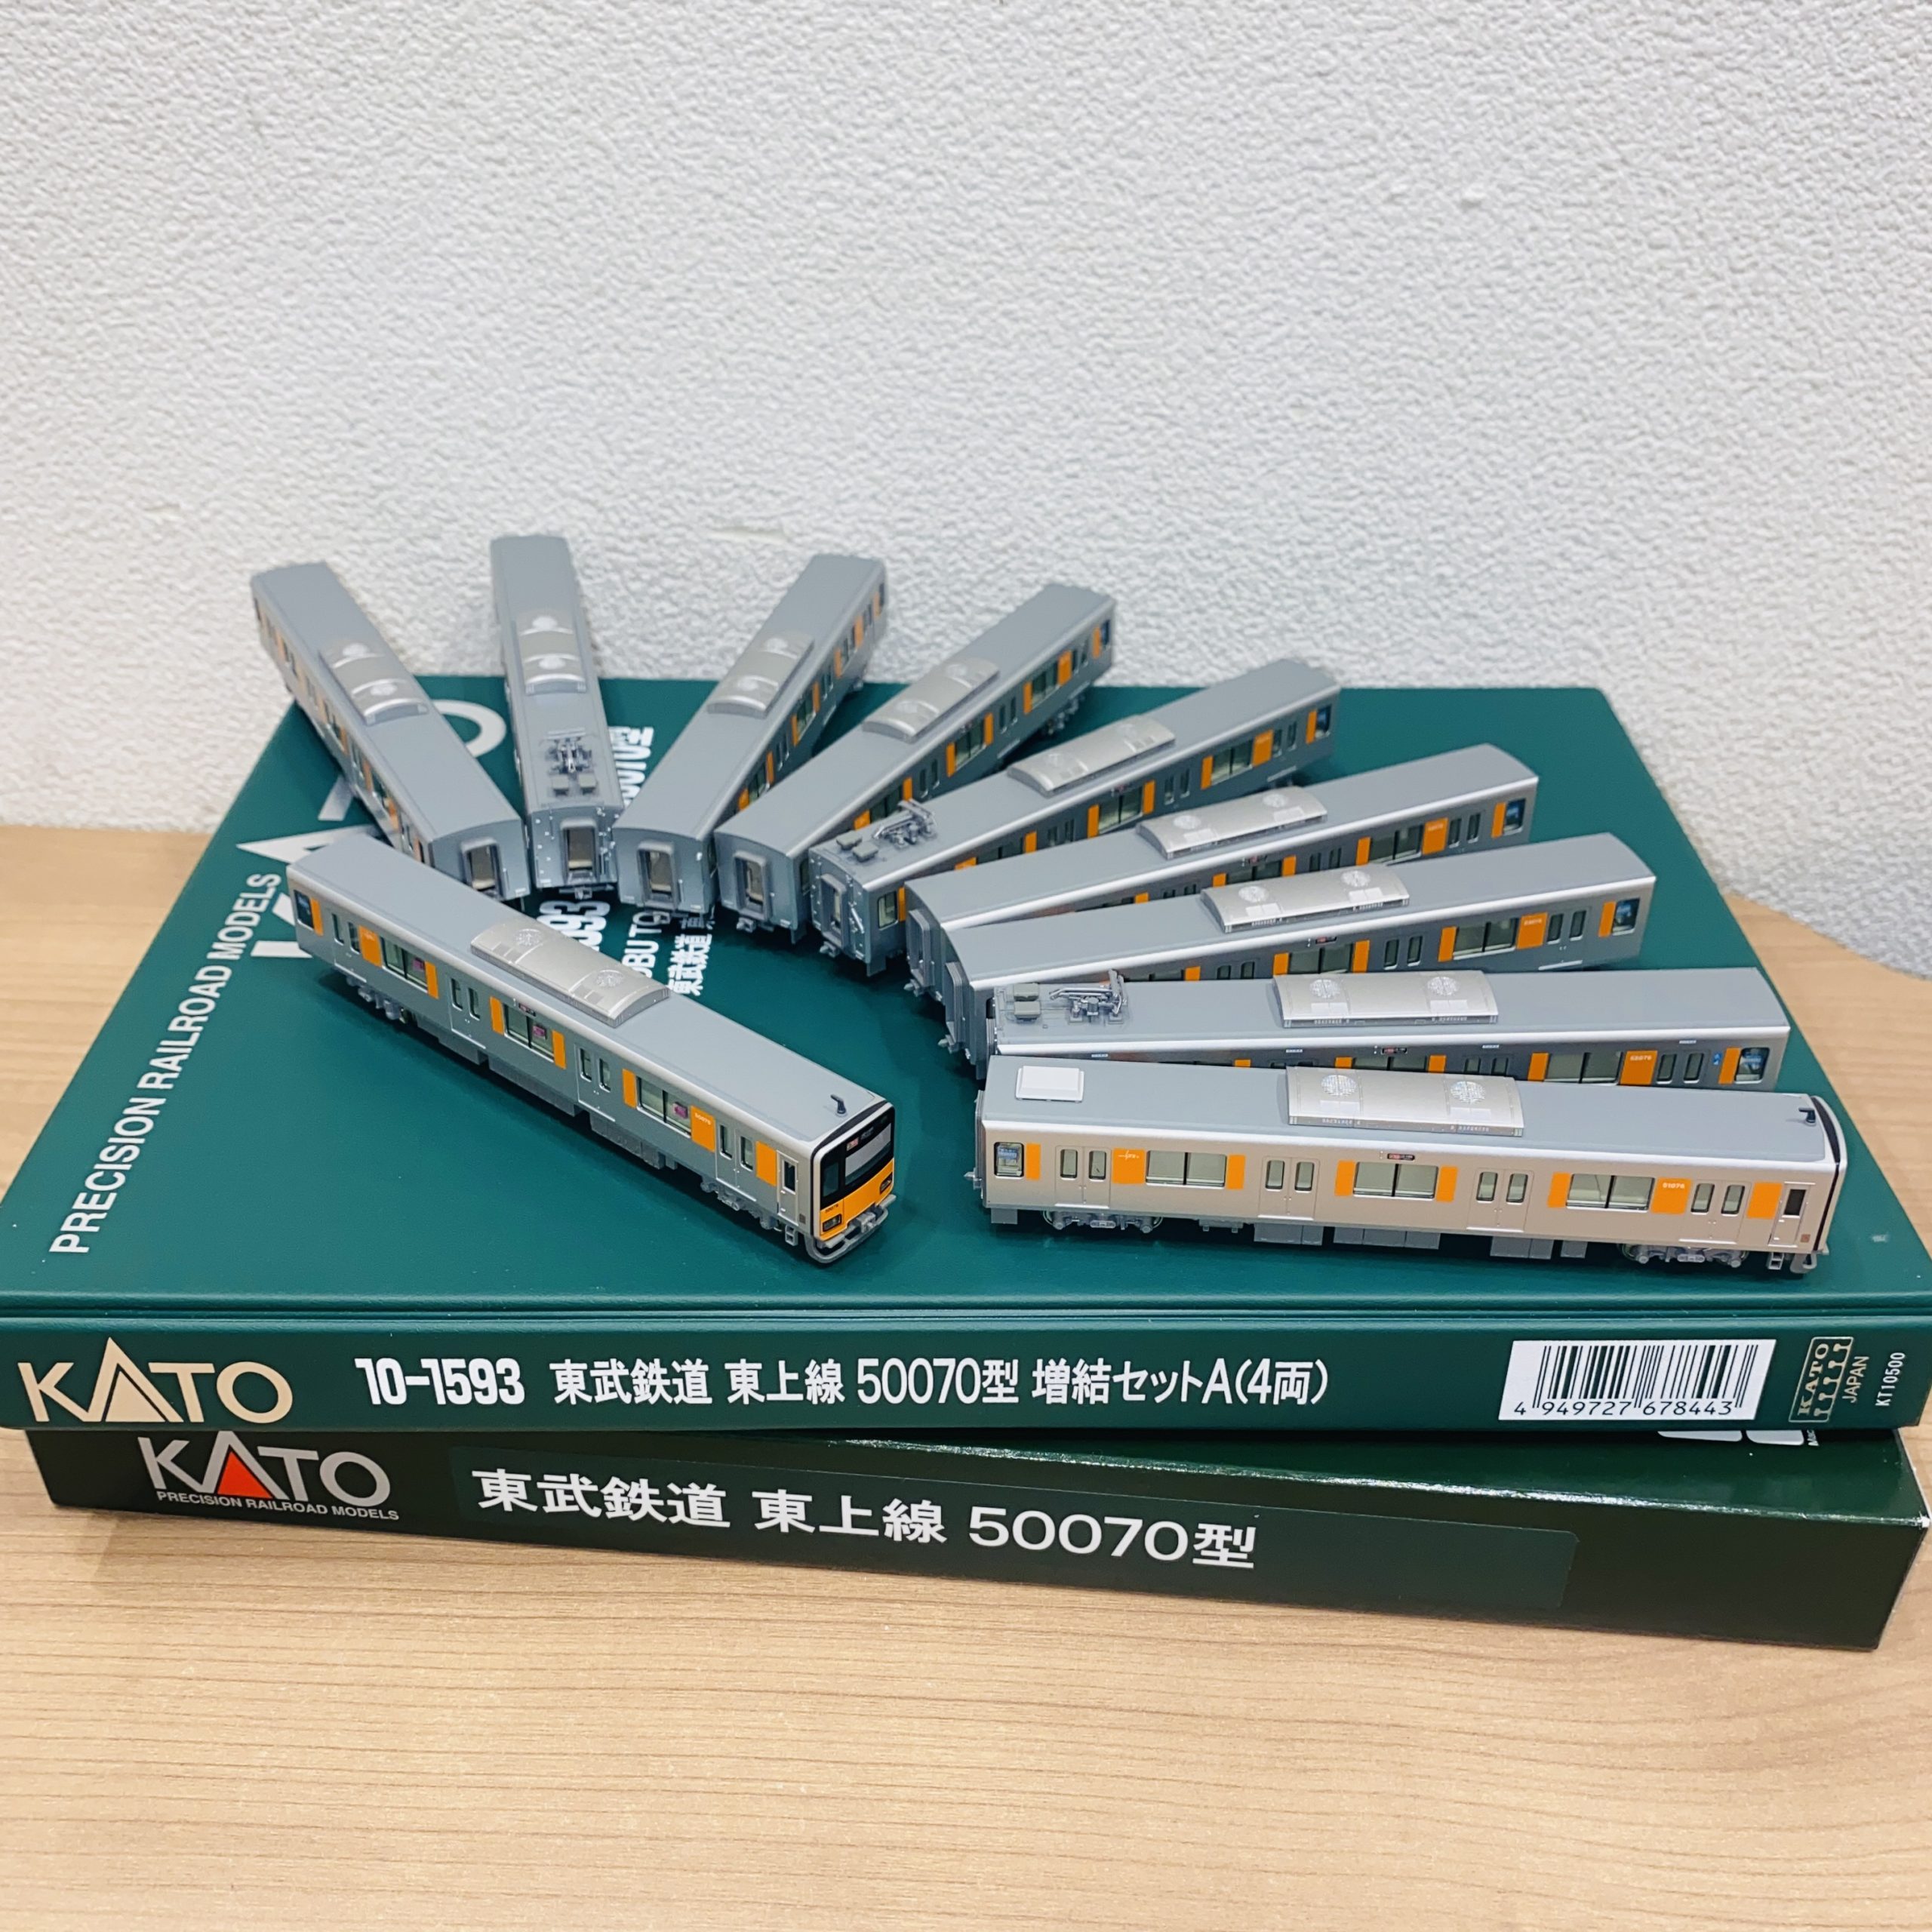 【KATO/カトー】Nゲージ 東武鉄道 東上線 50070系 増結セットA(4両) 10-1593 全10両